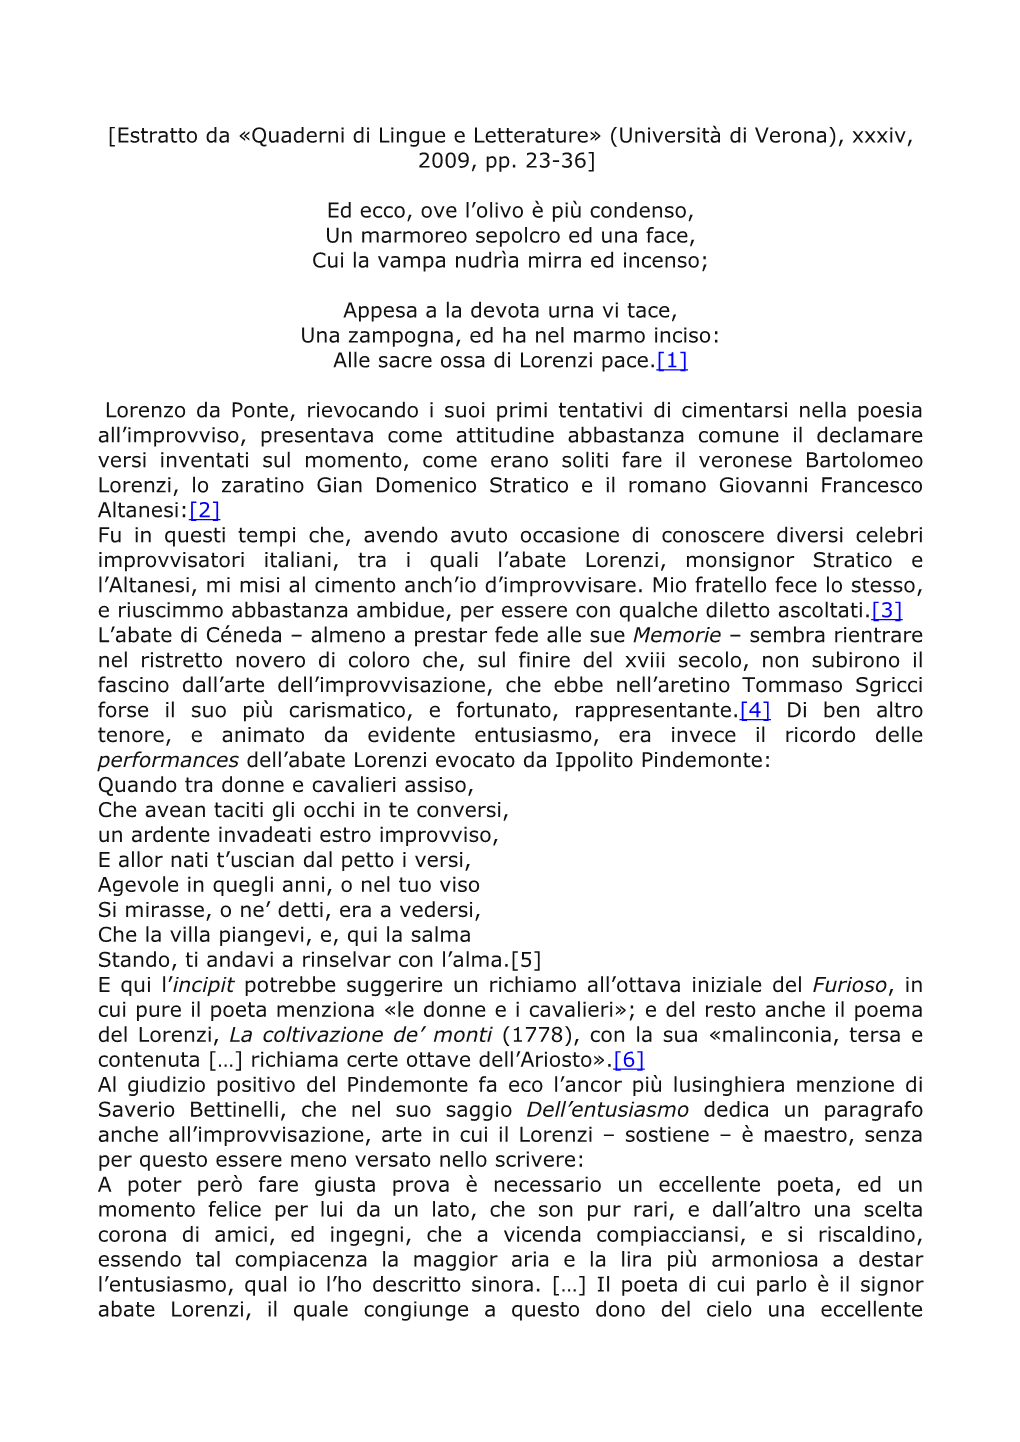 [Estratto Da «Quaderni Di Lingue E Letterature» (Università Di Verona), Xxxiv, 2009, Pp